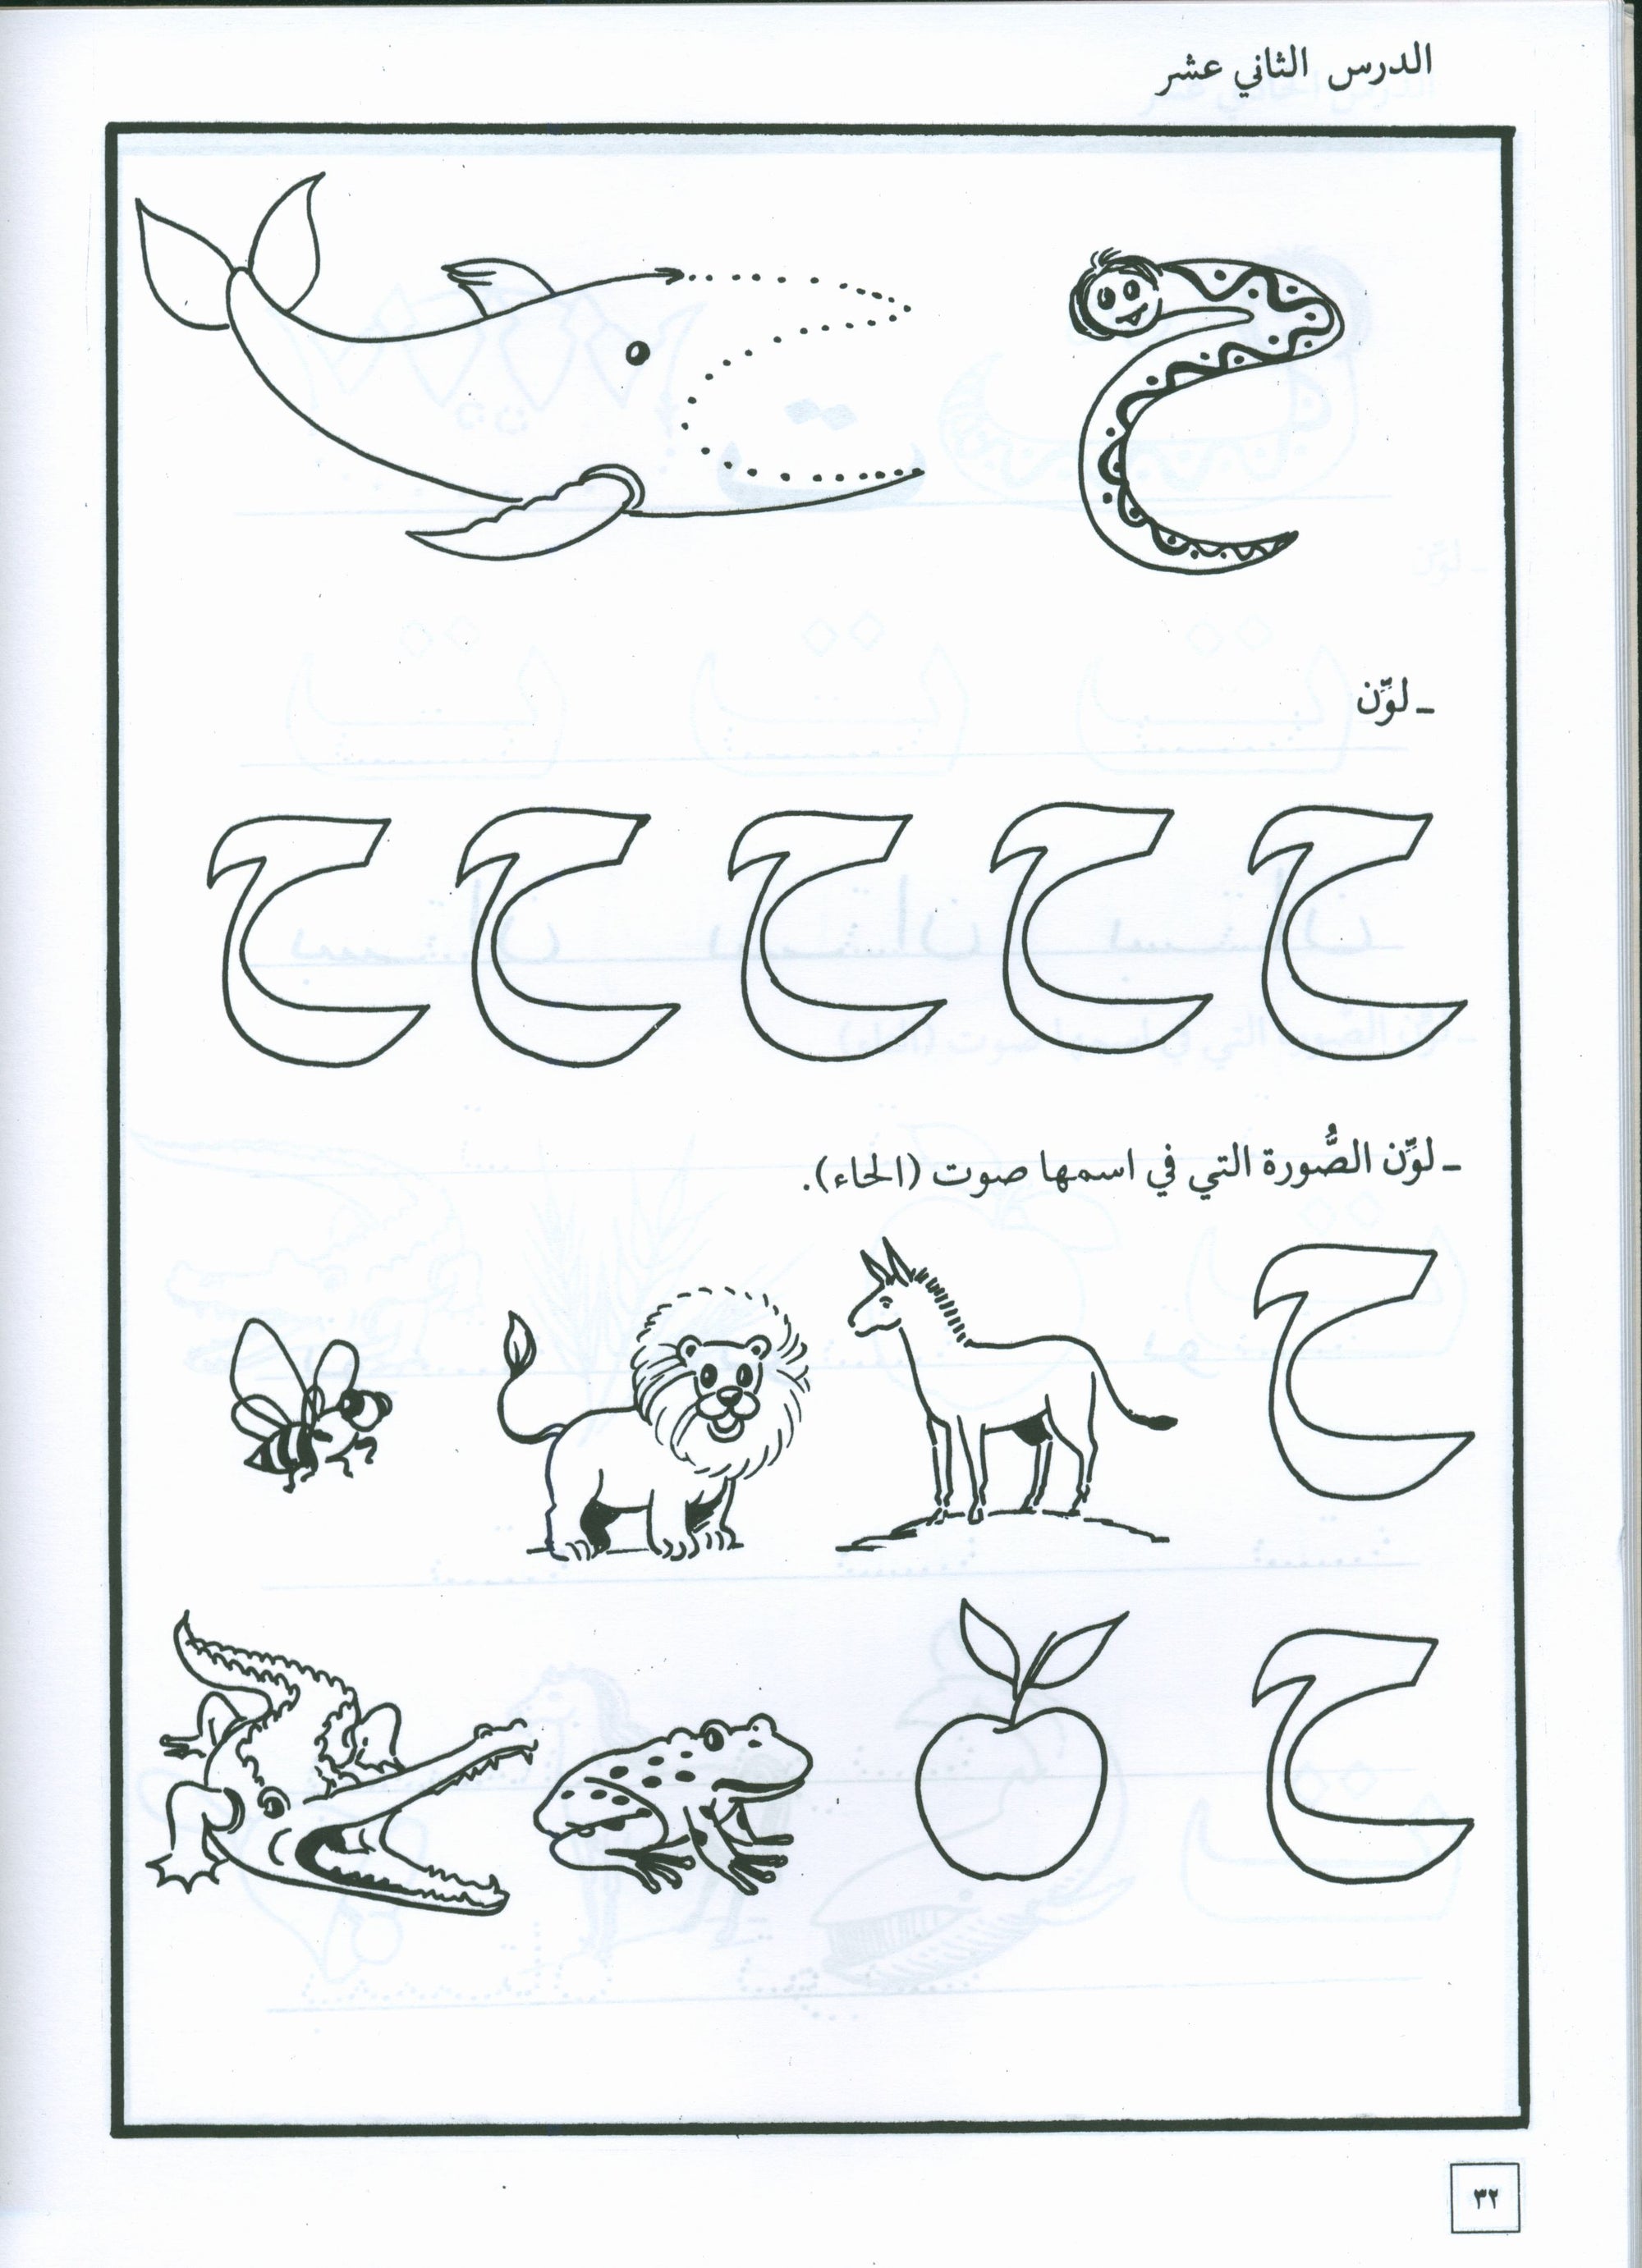 Hurry to Arabic Language Workbook KG 2 هيا الى العربية تمارين تمهيدي